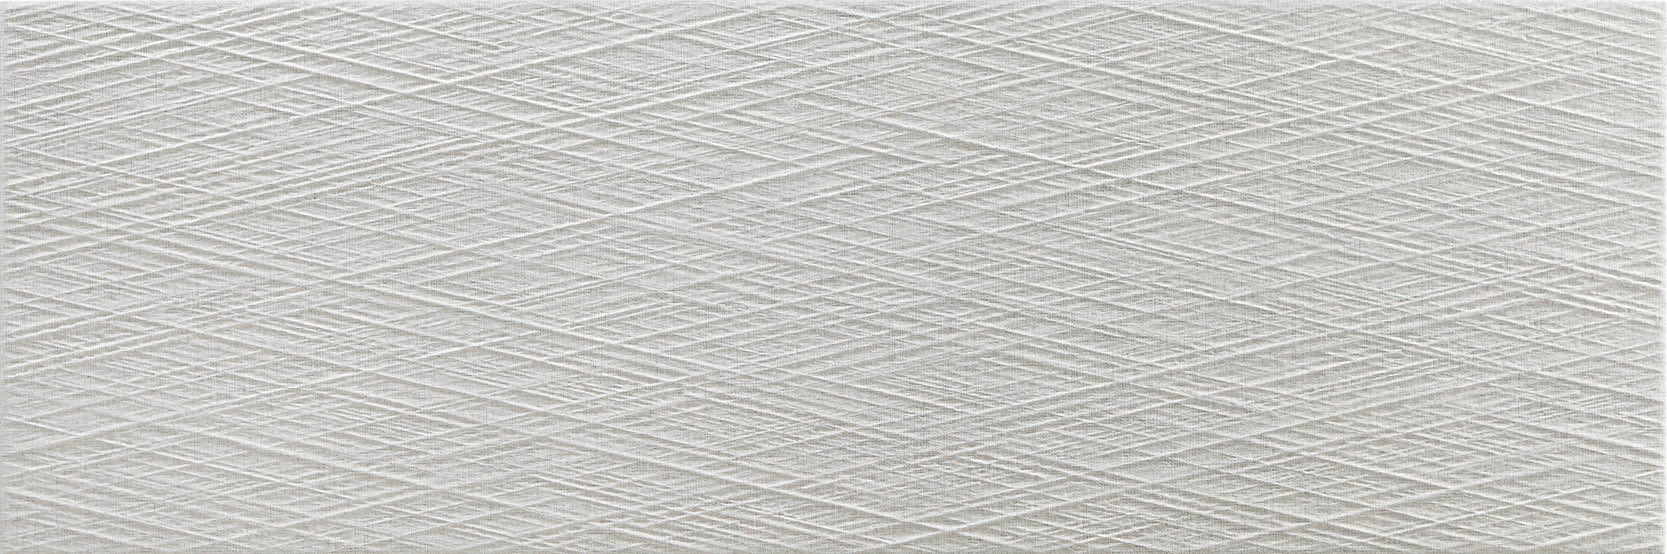 sammys-designer-flooring-tile-full-size-toulouse-grey-fibre.jpg